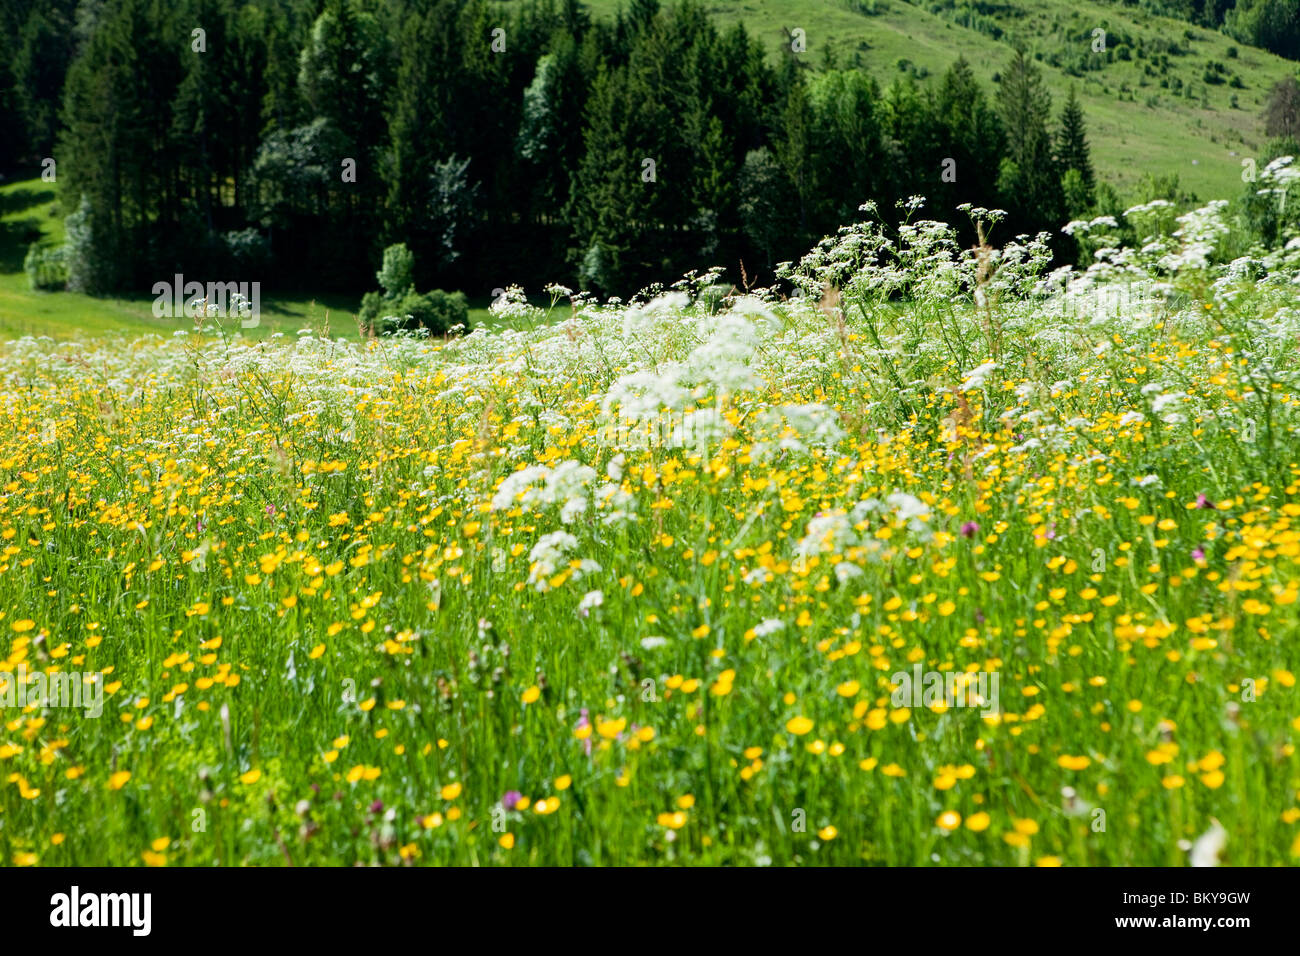 Flower meadow, mountain Staffel, Jachenau, Bavaria, Germany Stock Photo